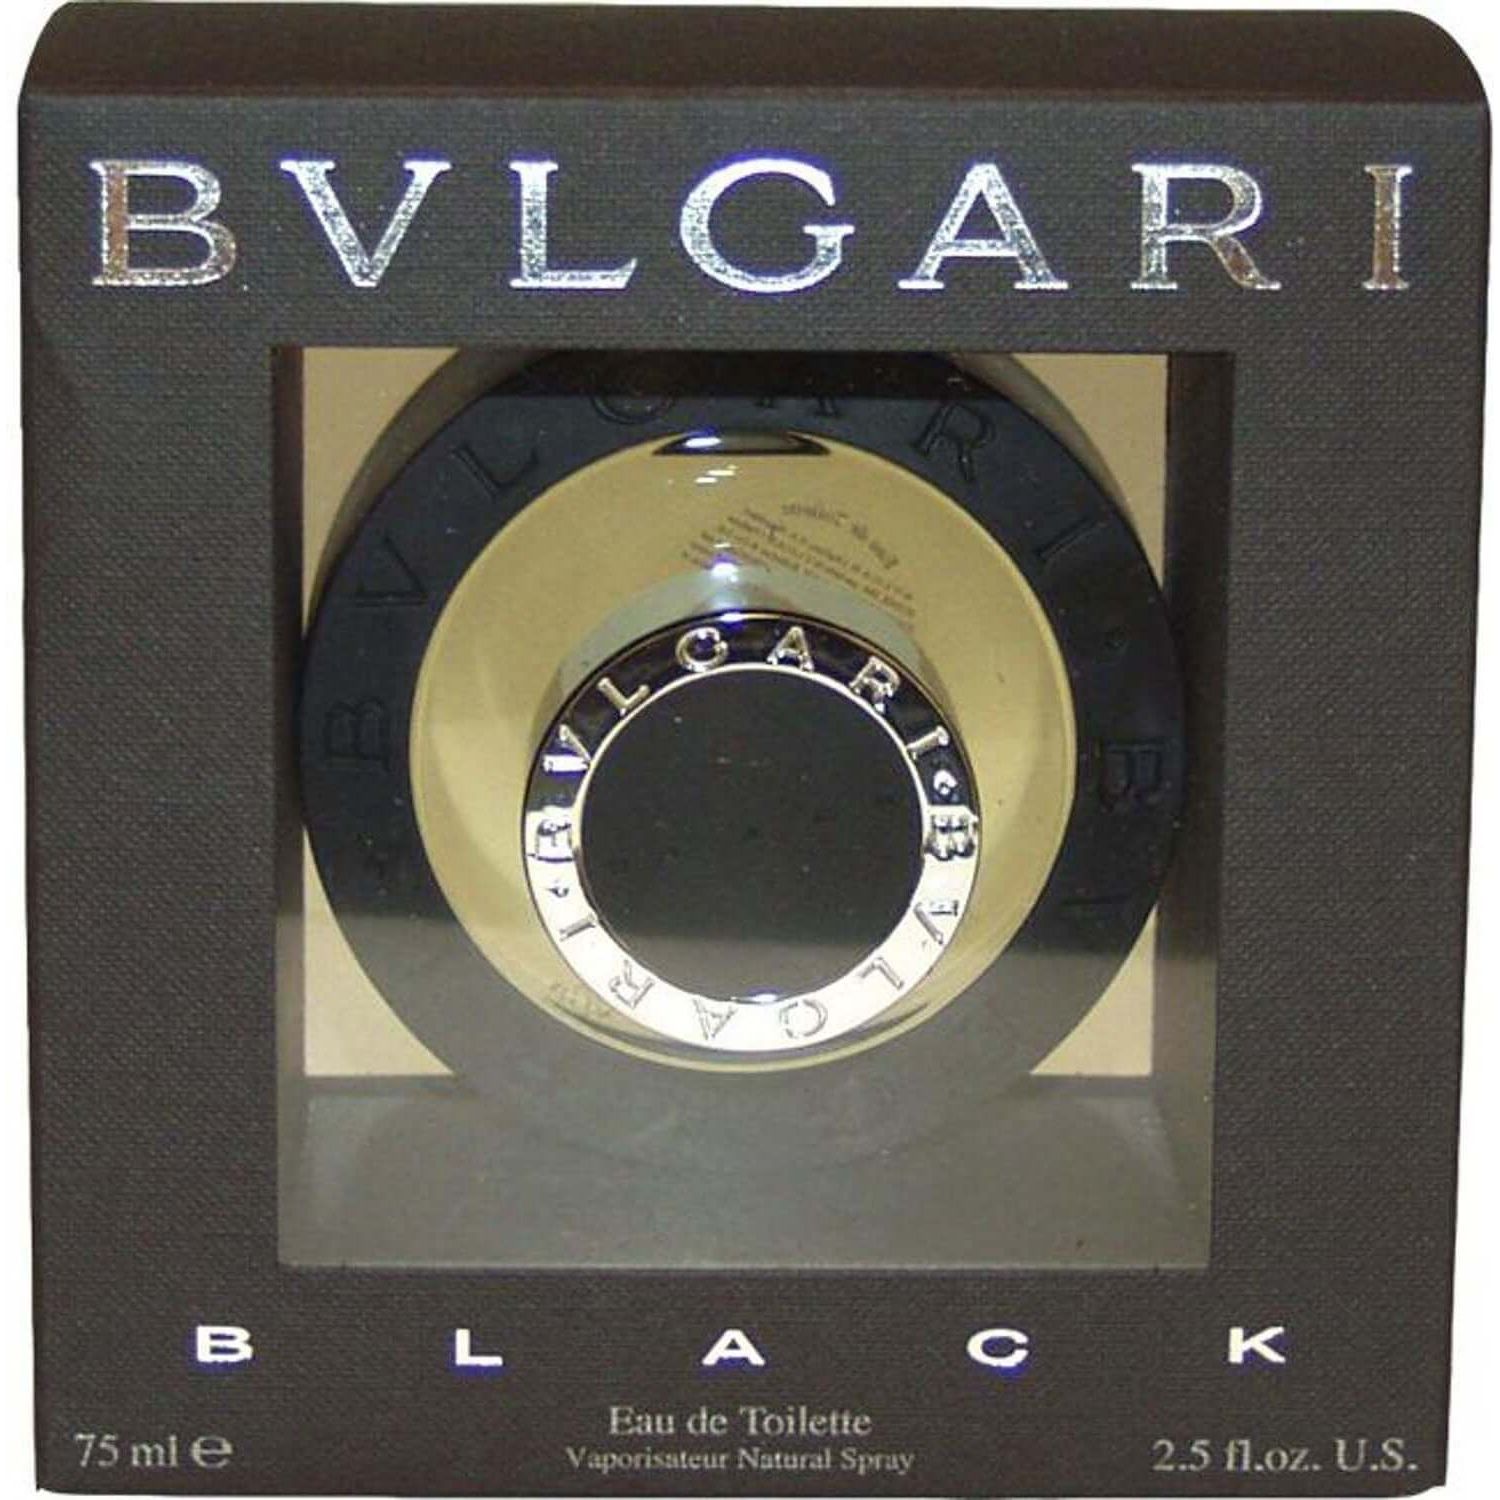 Bvlgari Black by Bulgari Cologne 2.5 oz 